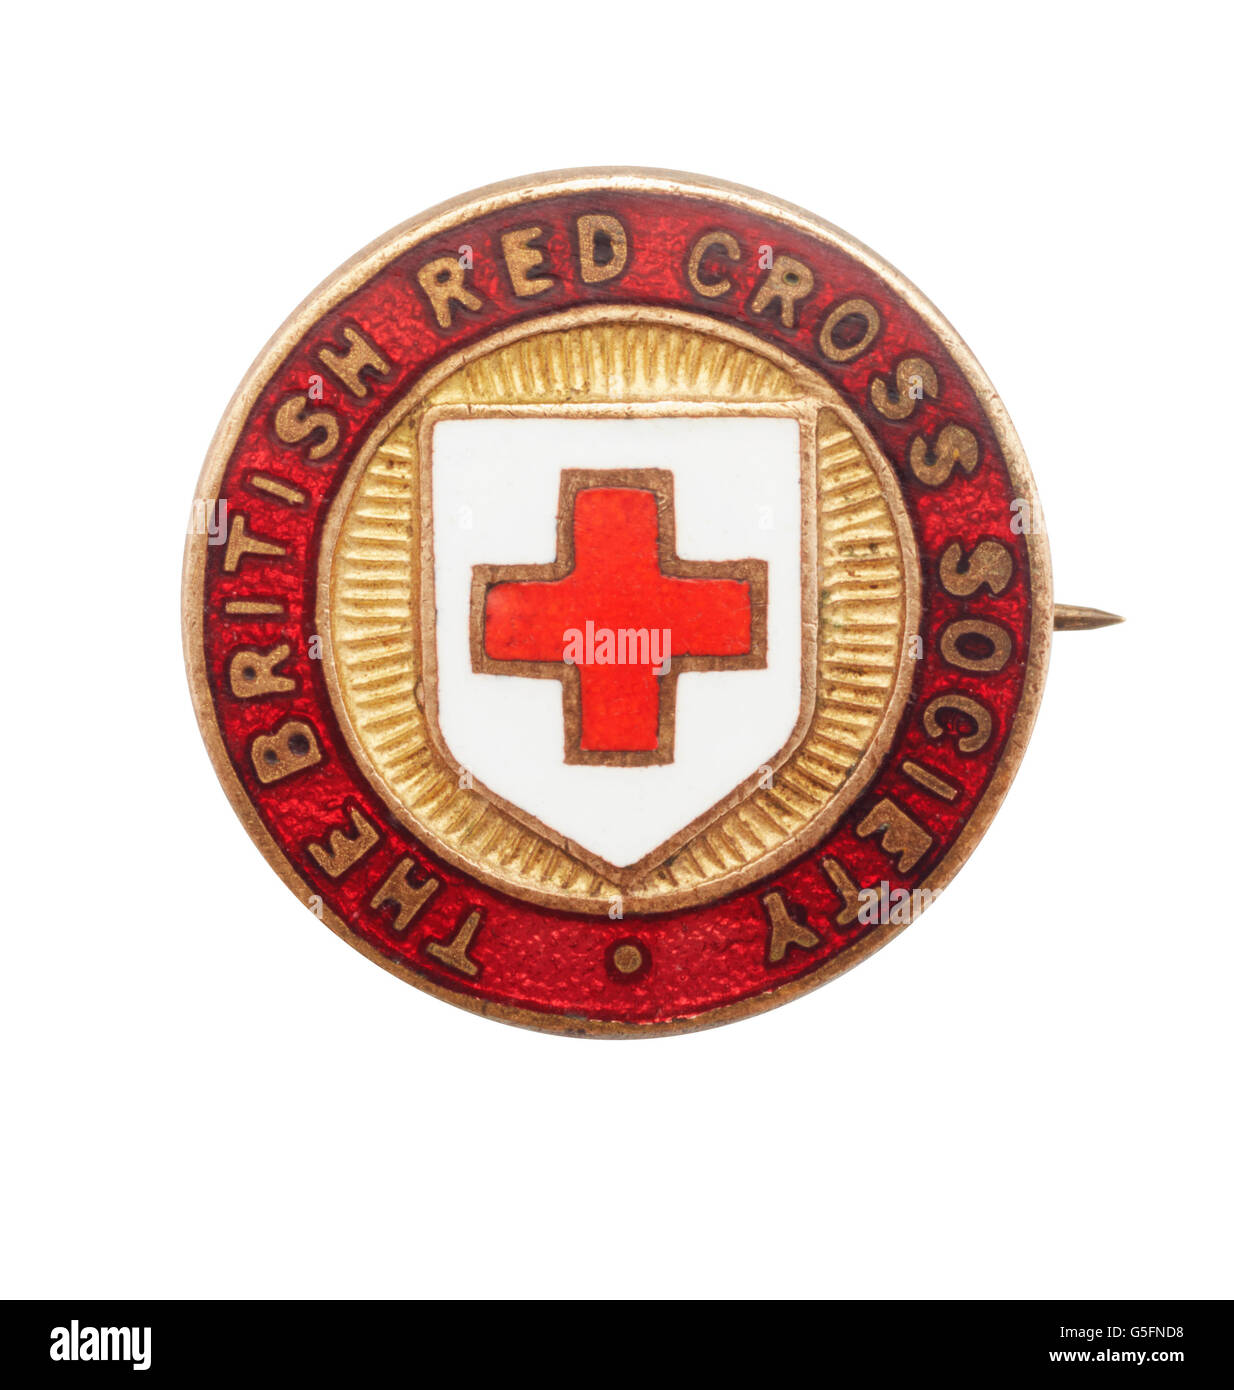 La sociedad de la Cruz Roja Británica insignia de guerra Foto de stock